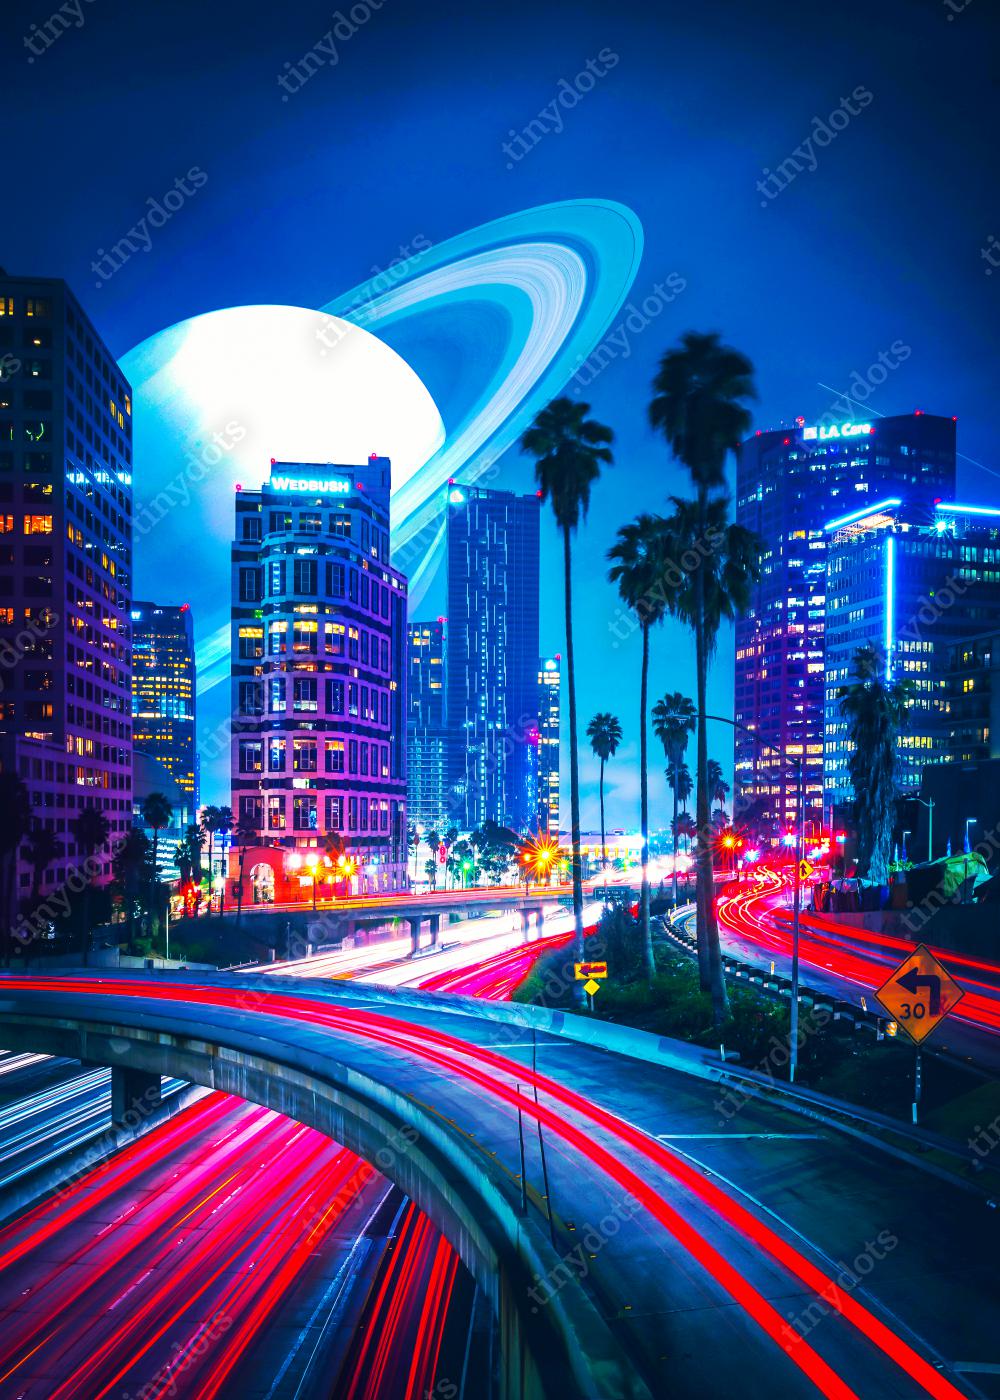 Plakat w ramie Jamesgvposters - Roads to Saturn - Neonowe miasto z dużymi lampami